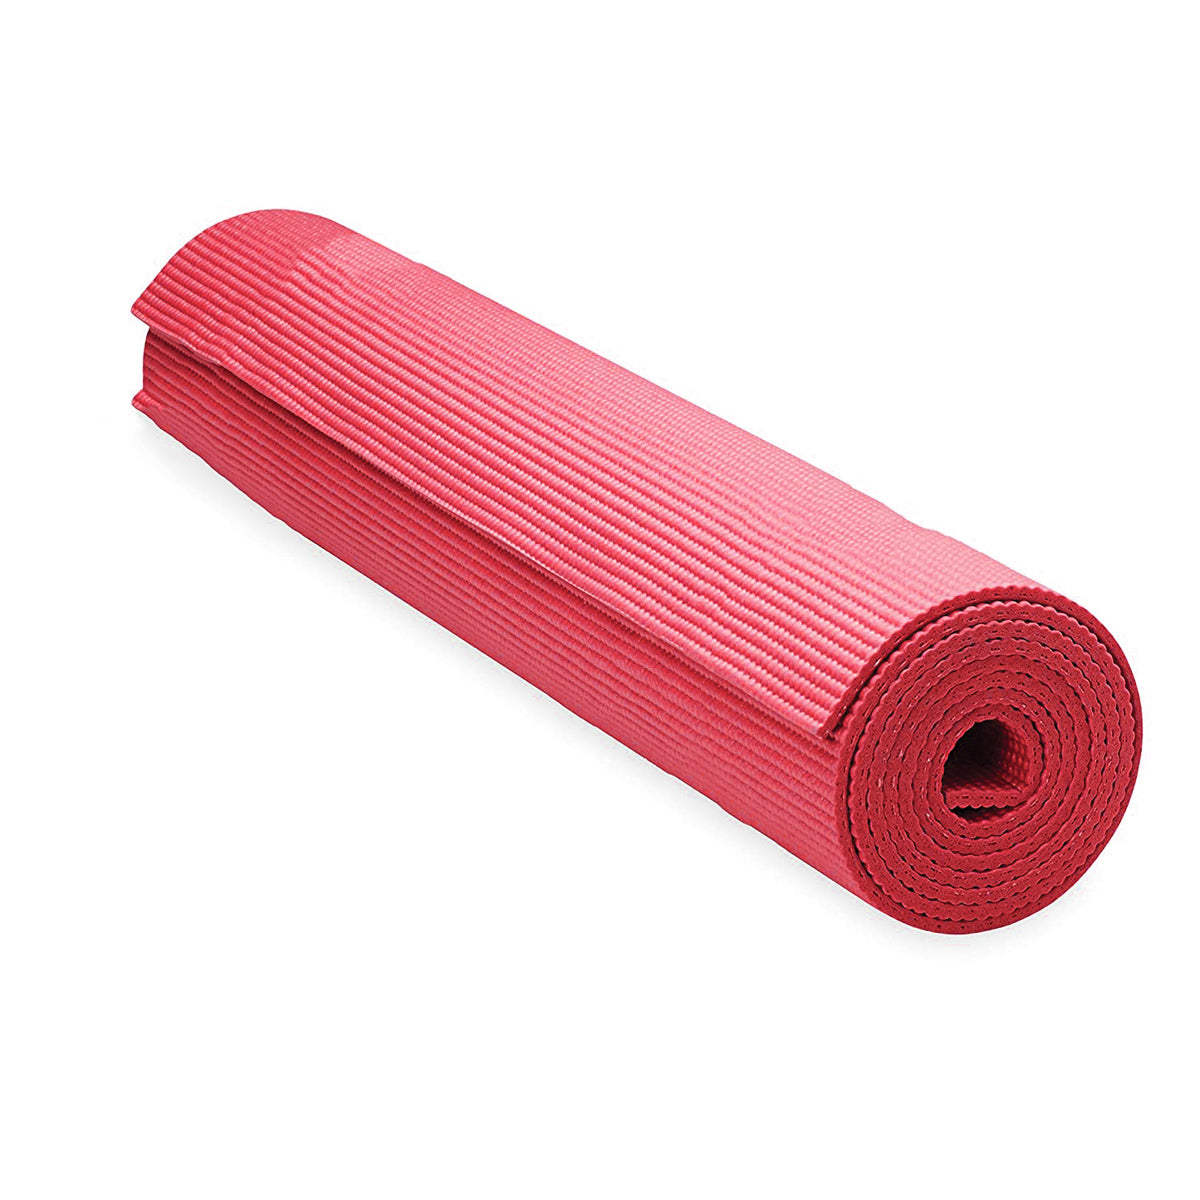 PVC Fitness Yoga Mat 3mm Thick for Workout (6 Feet x 2 Feet) (ART01734)